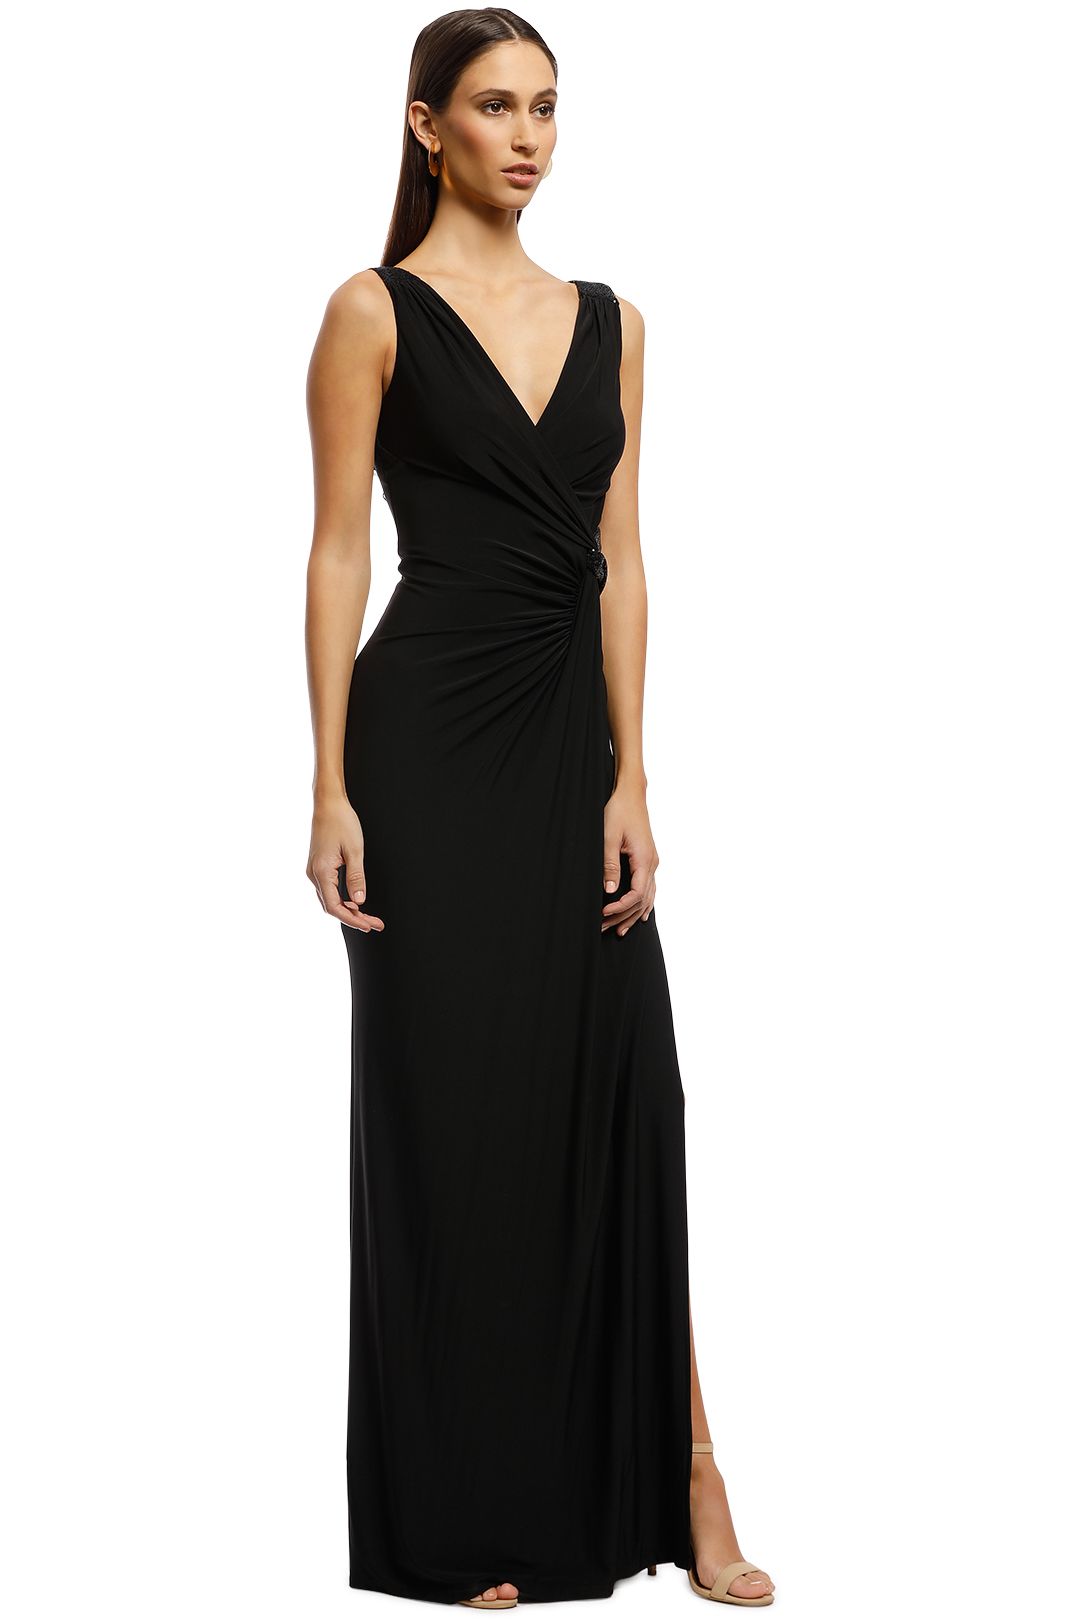 Montique - Amalia Jersey Wrap Gown - Black - Side